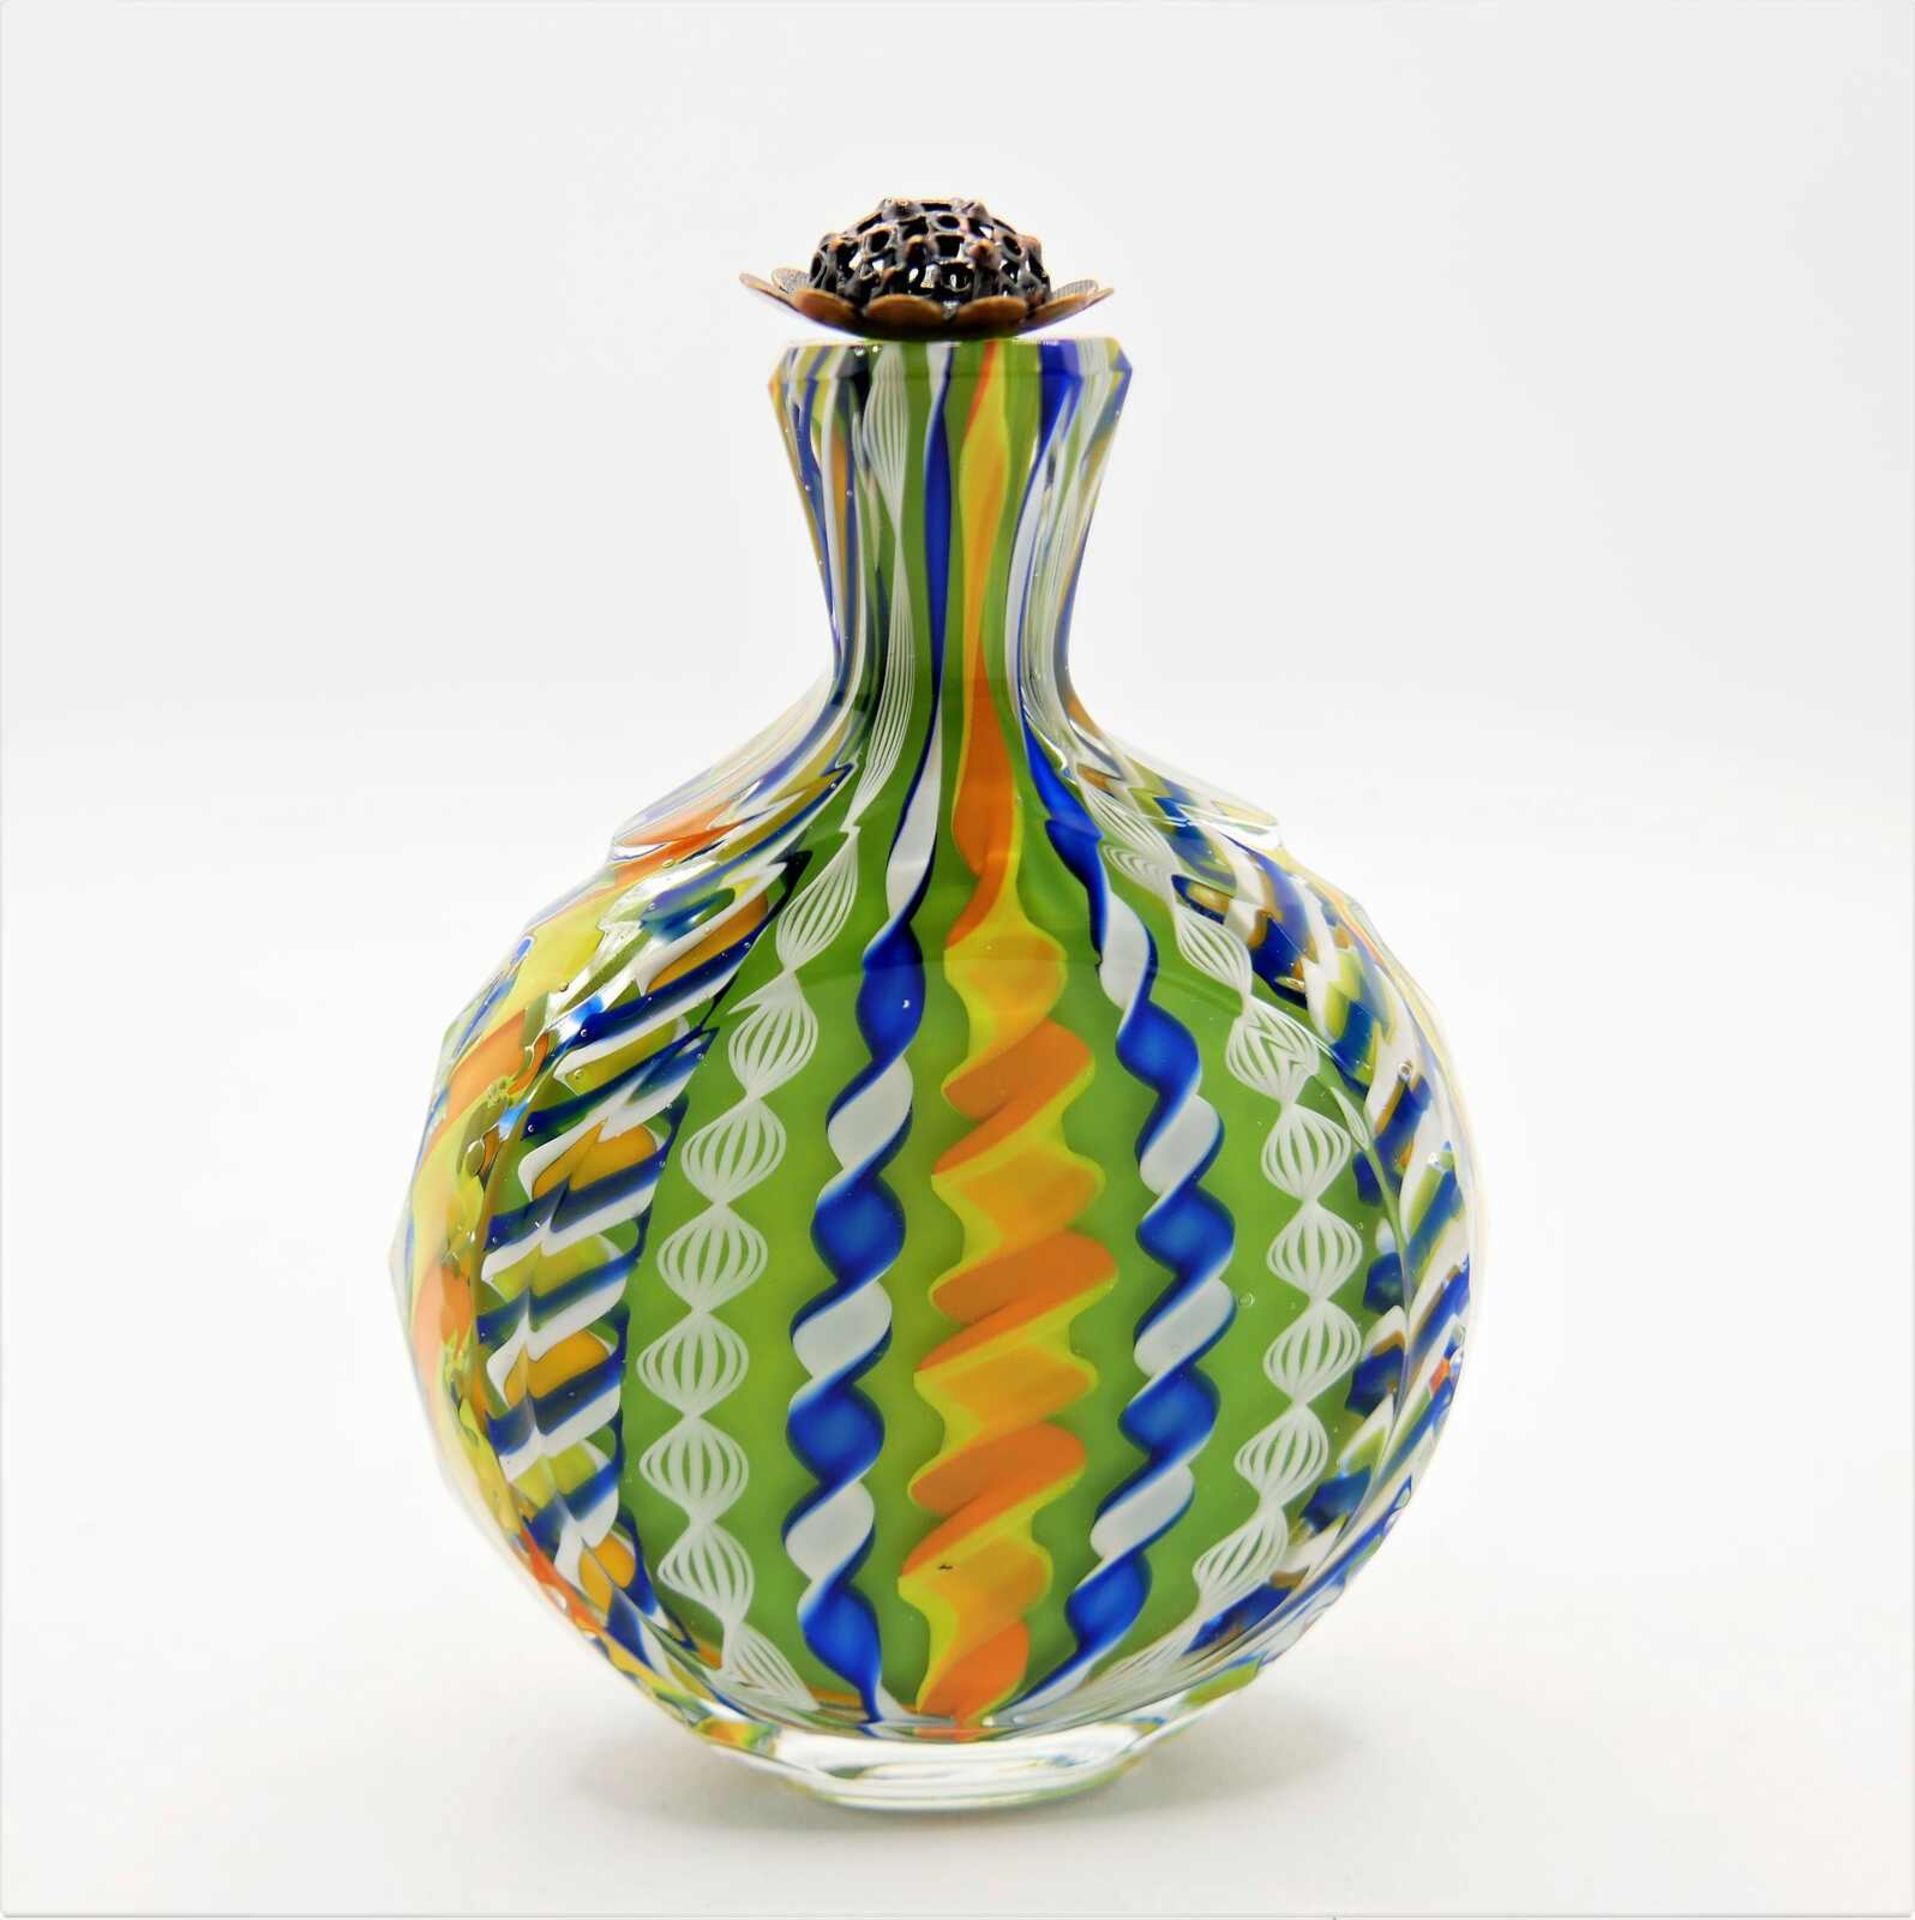 Schnupftabakflasche Glas aus Sammlung, Bixl, grün/orange/gelb/blau/weiß, mit Stöpsel. Bayrischer - Bild 2 aus 2